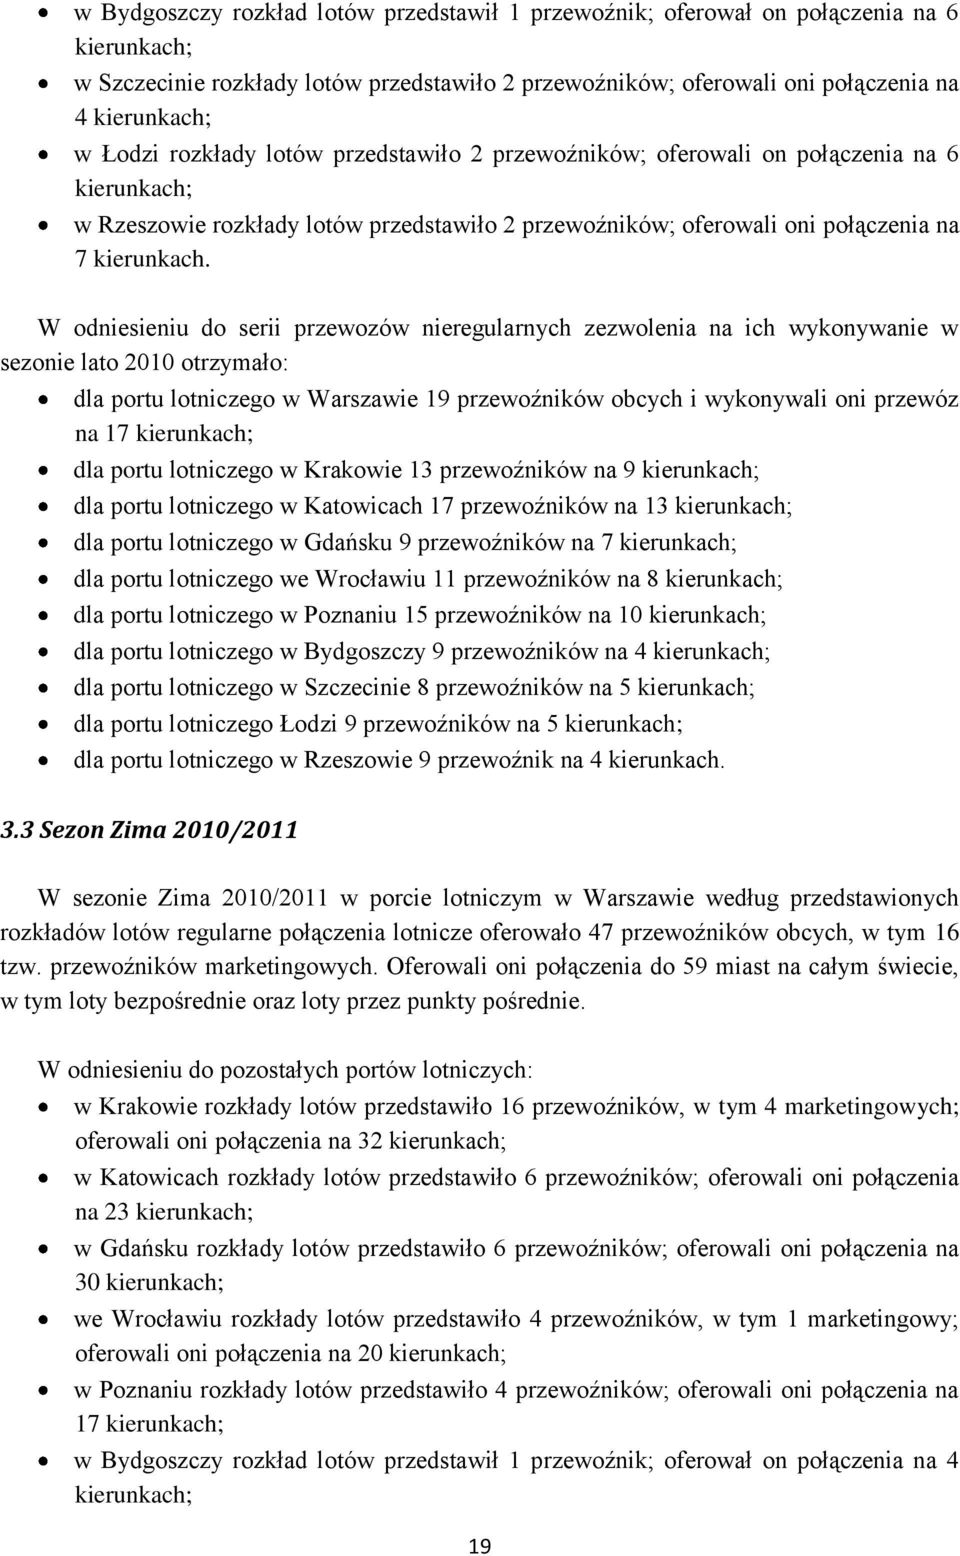 W odniesieniu do serii przewozów nieregularnych zezwolenia na ich wykonywanie w sezonie lato 2010 otrzymało: dla portu lotniczego w Warszawie 19 przewoźników obcych i wykonywali oni przewóz na 17